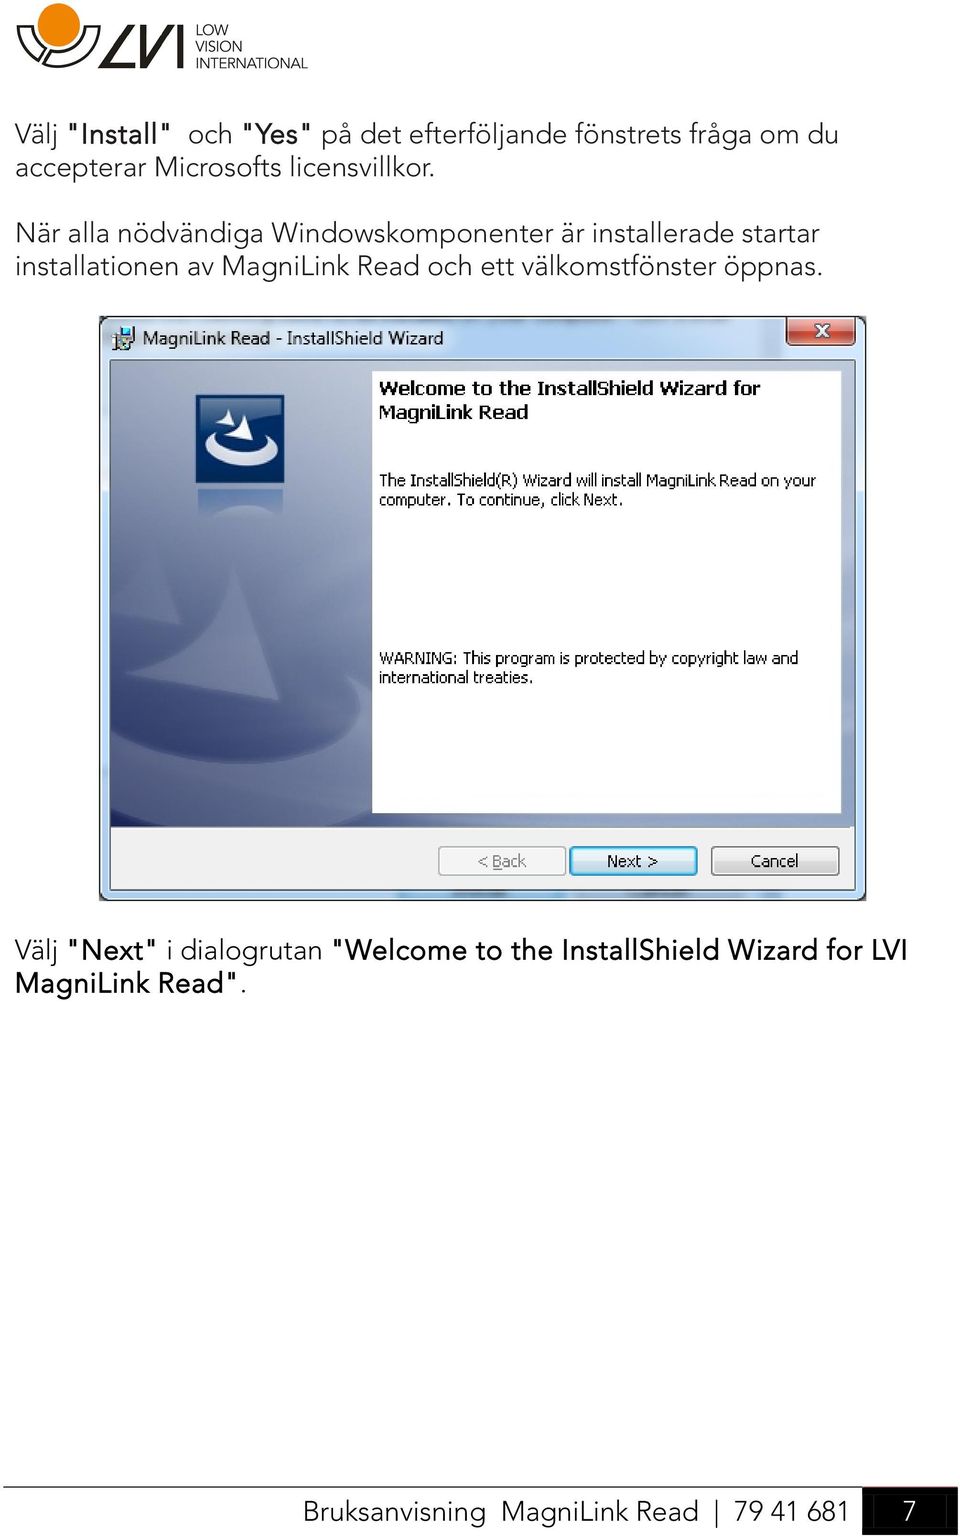 När alla nödvändiga Windowskomponenter är installerade startar installationen av MagniLink